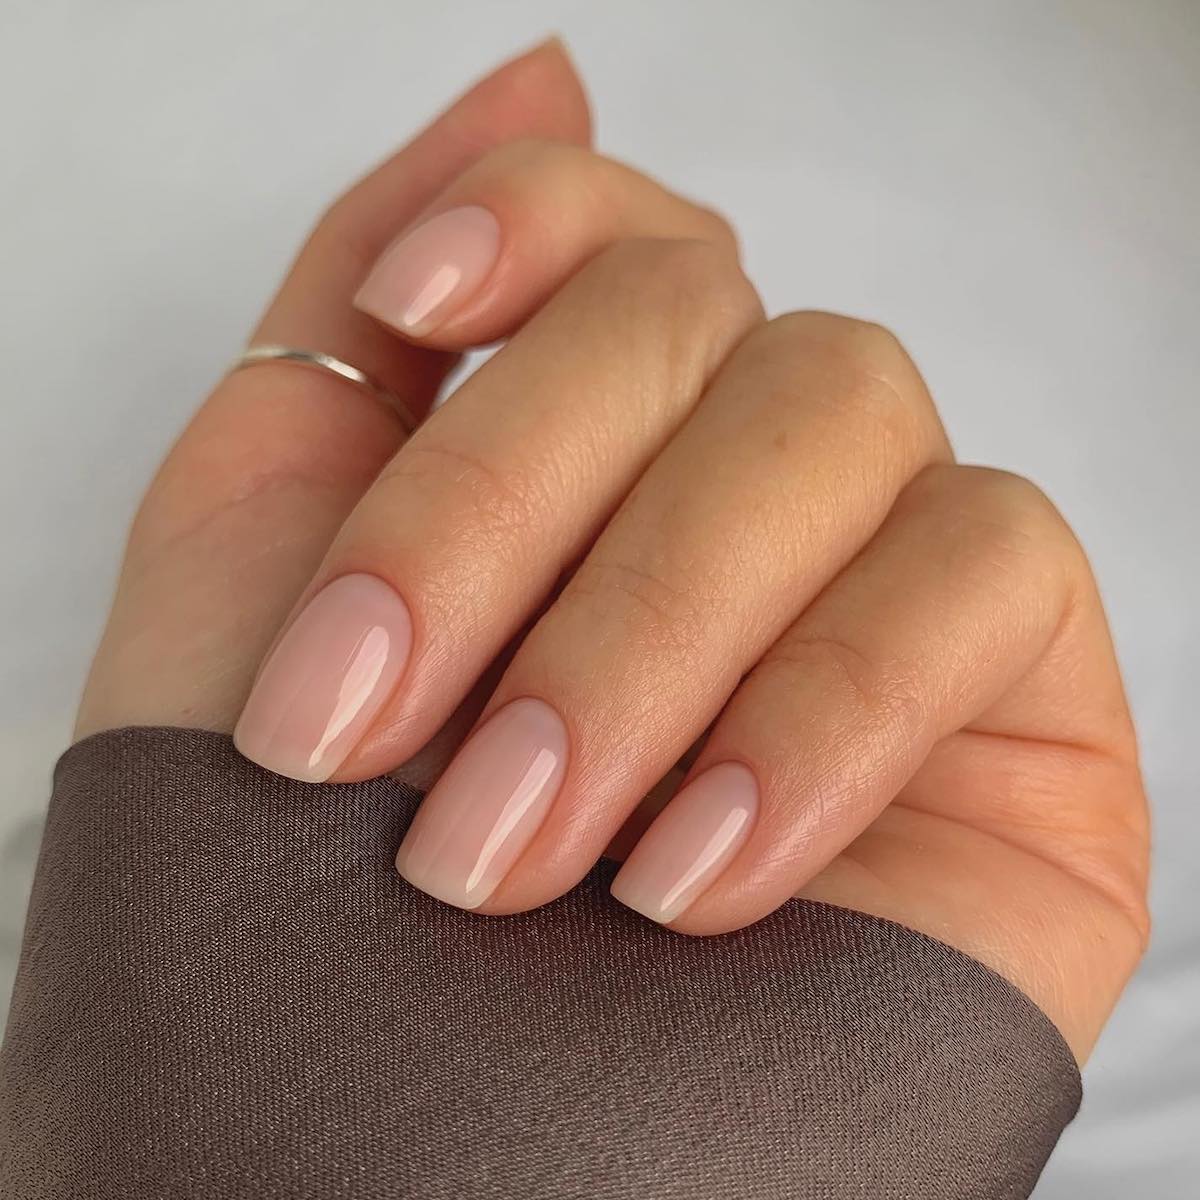 Shiny bare nails